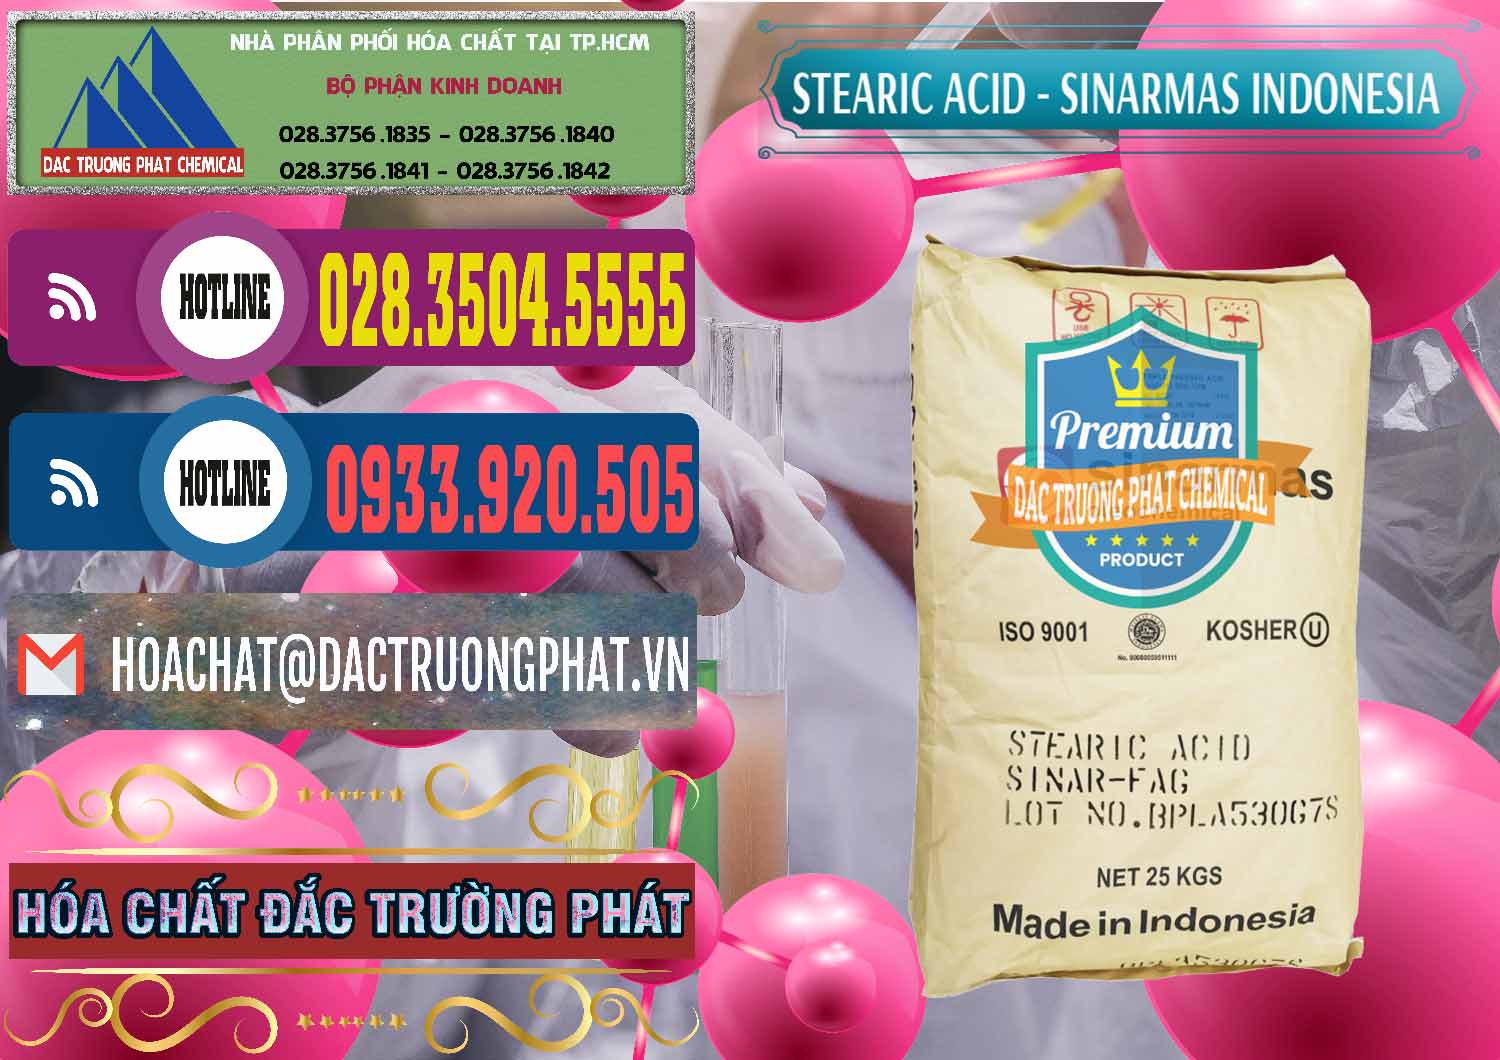 Cty kinh doanh - bán Axit Stearic - Stearic Acid Sinarmas Indonesia - 0389 - Chuyên cung cấp - nhập khẩu hóa chất tại TP.HCM - muabanhoachat.com.vn